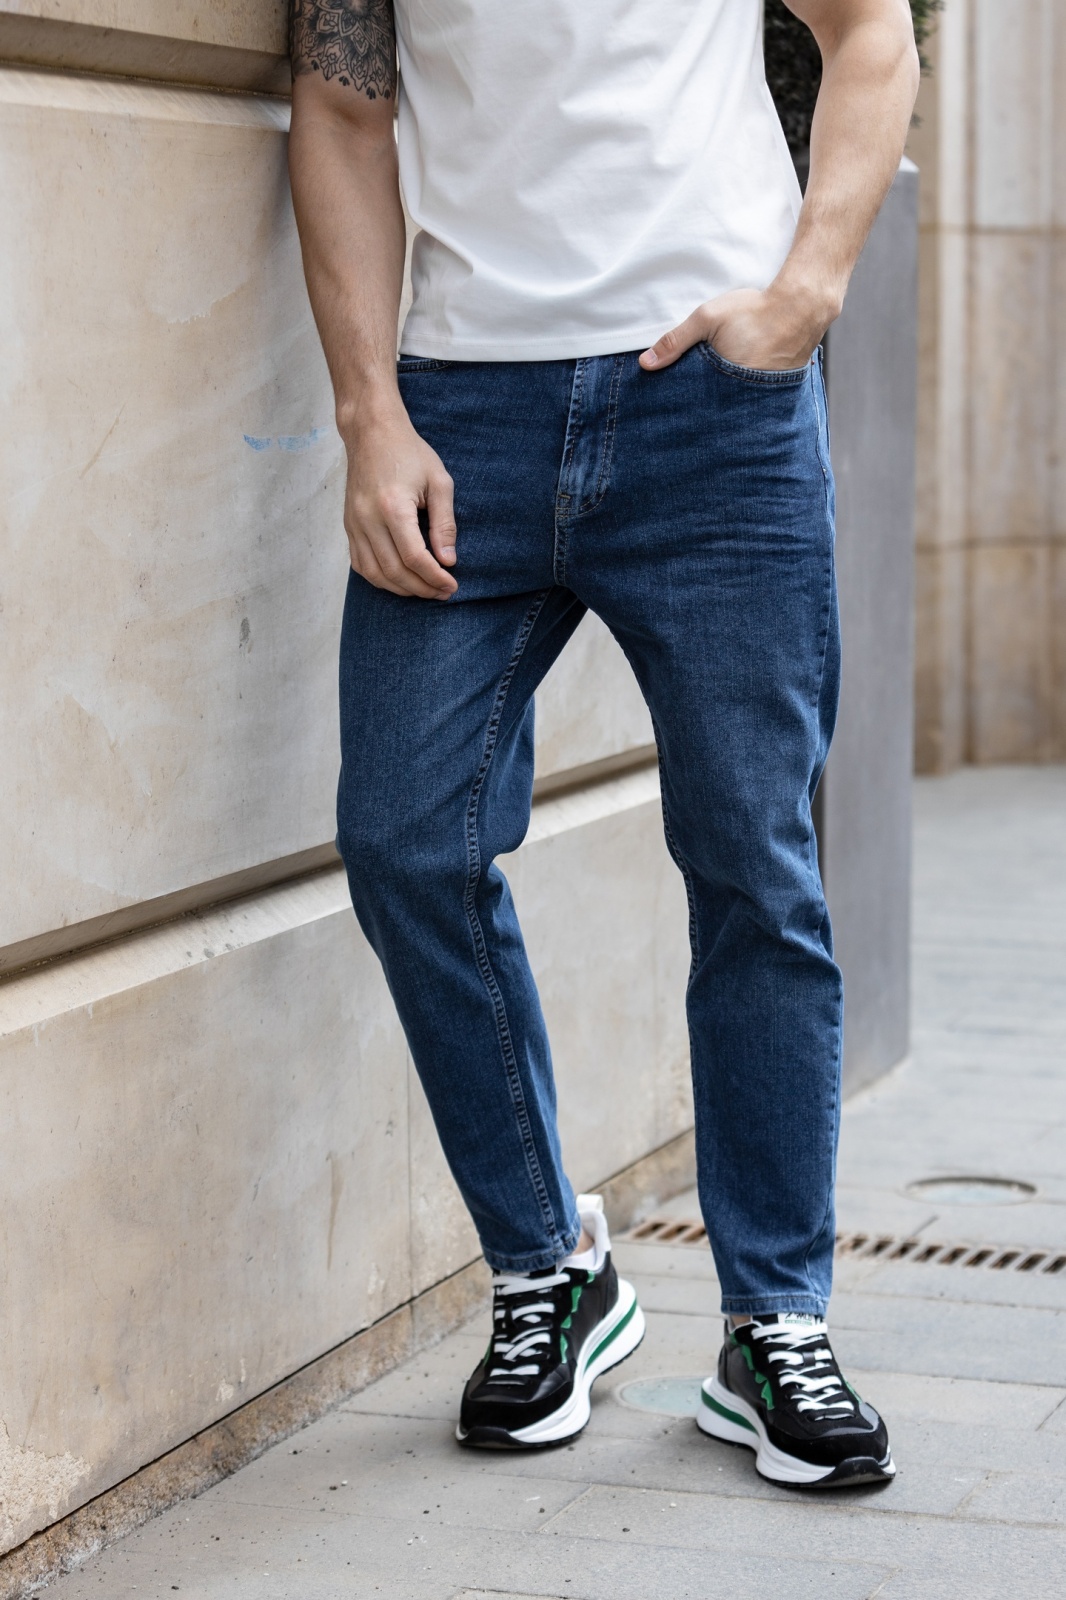 Мода и стиль - крутые джинсы